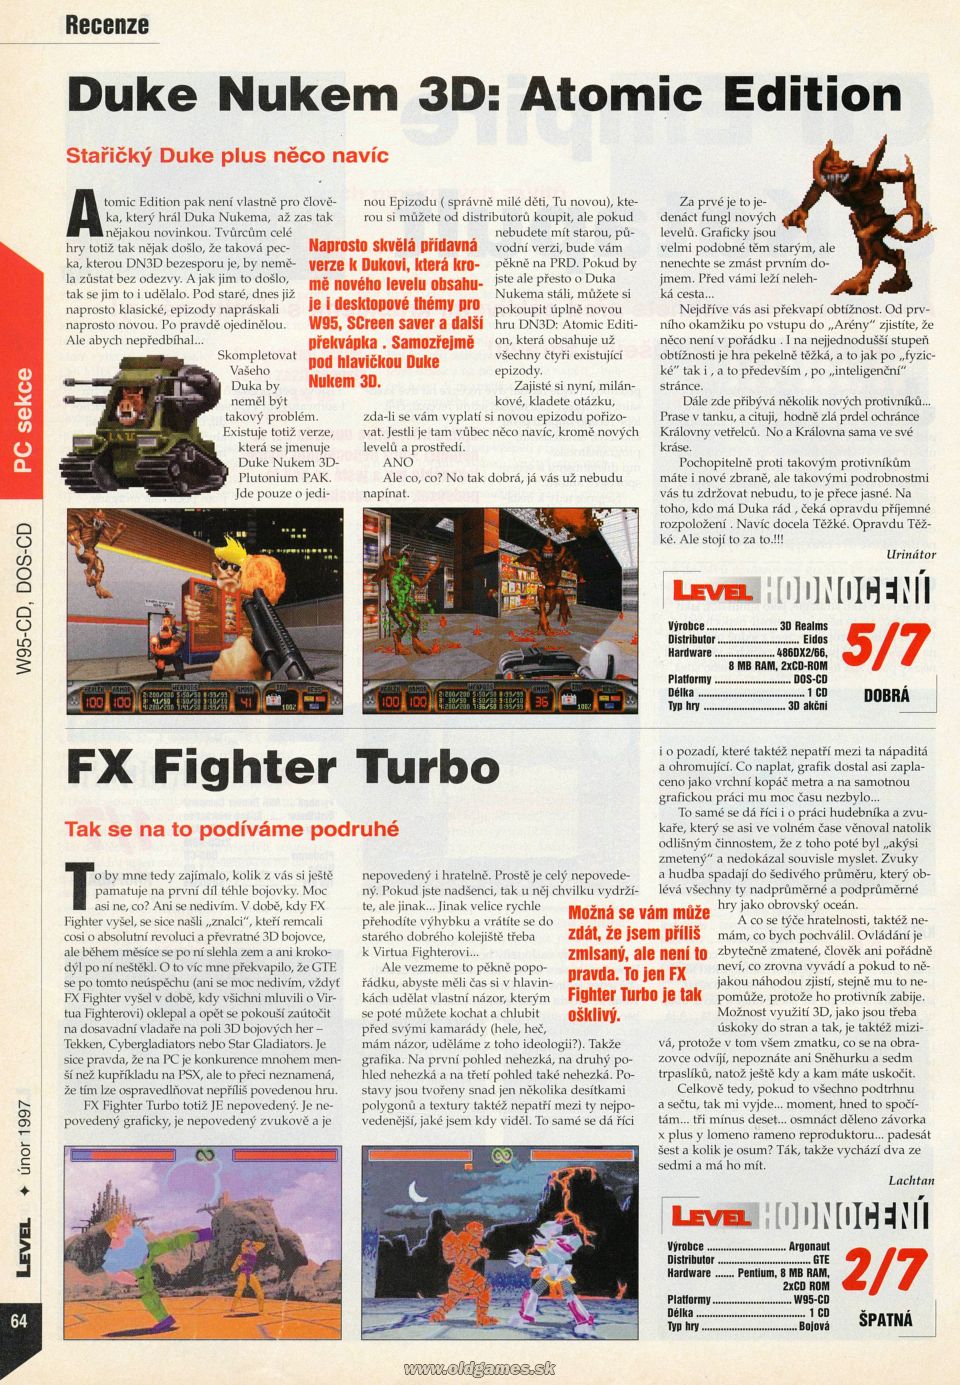 Duke Nukem 3D: Atomic Edition, FX Fighter Turbo